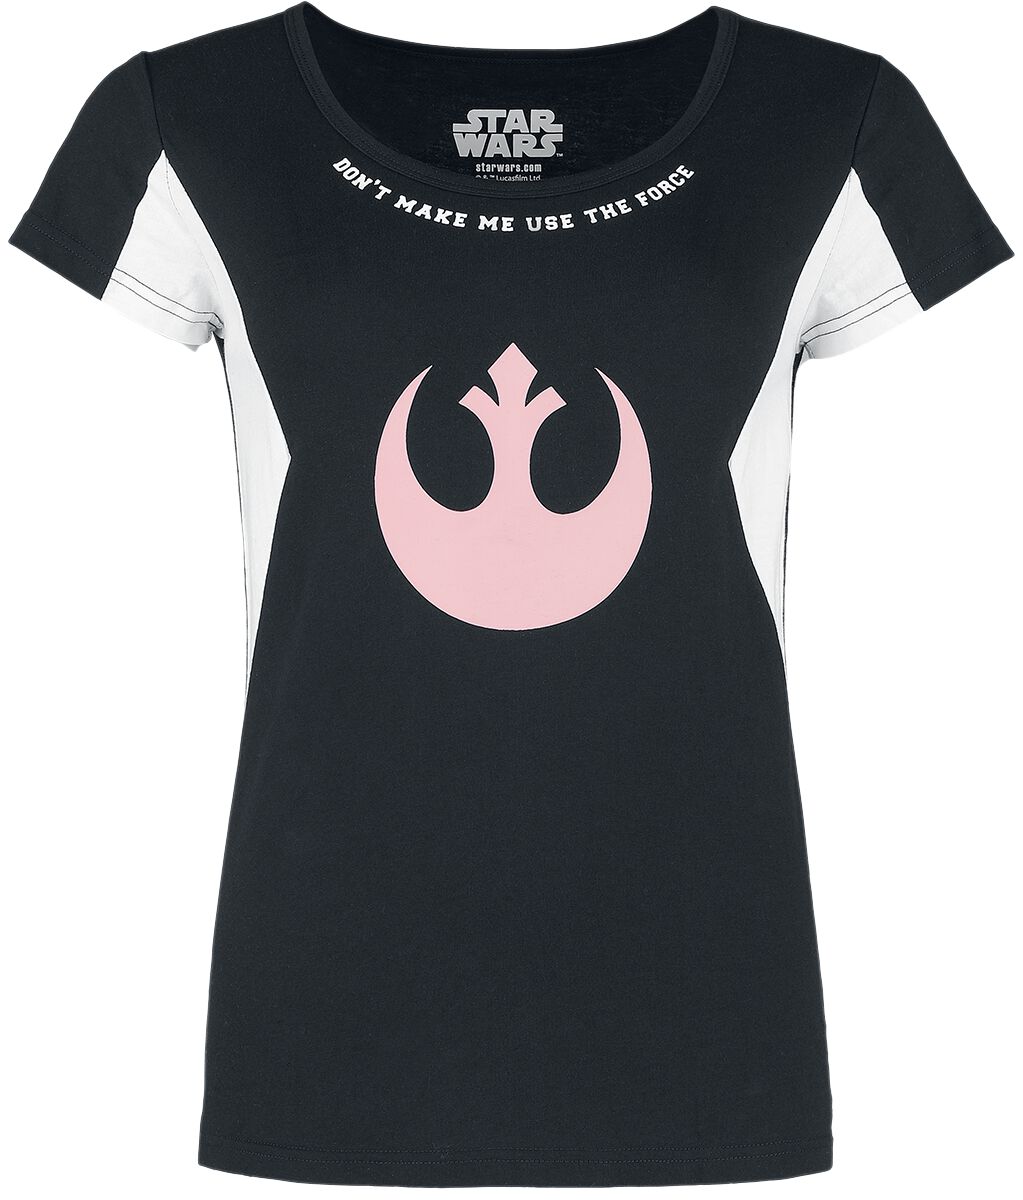 T-Shirt Manches courtes de Star Wars - S à XXL - pour Femme - noir/blanc